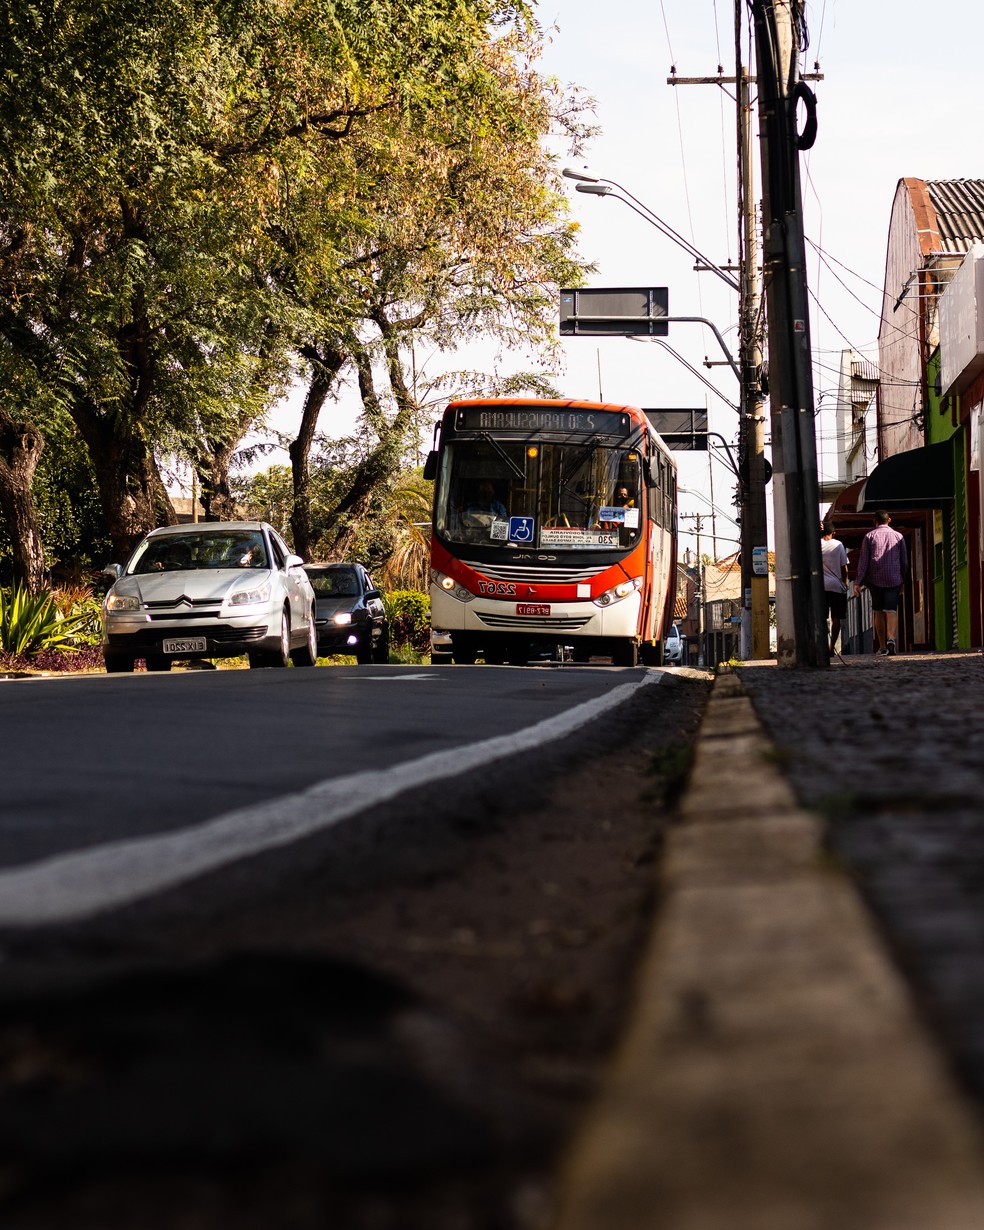 Viajando o Brasil (ANDROID) - Jogo Brasileiro de Ônibus em Desenvolvimento  